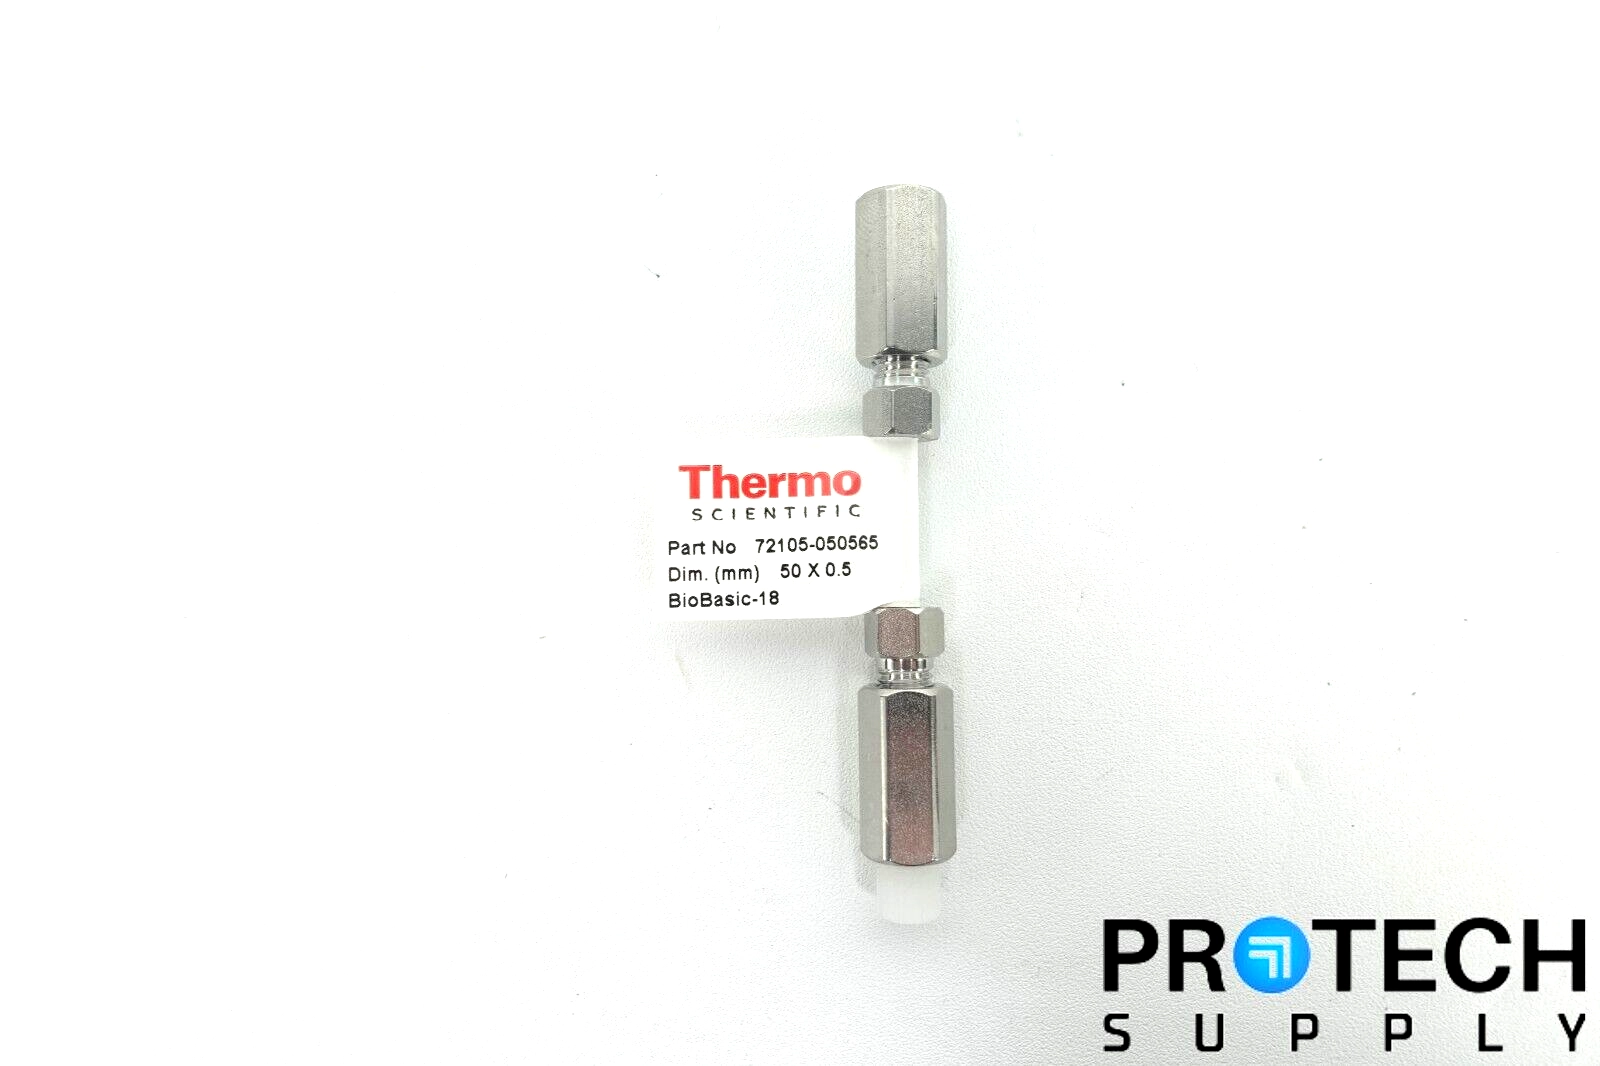 Thermo Scientific BioBasic-18 5µm Column 50 X 0.5m